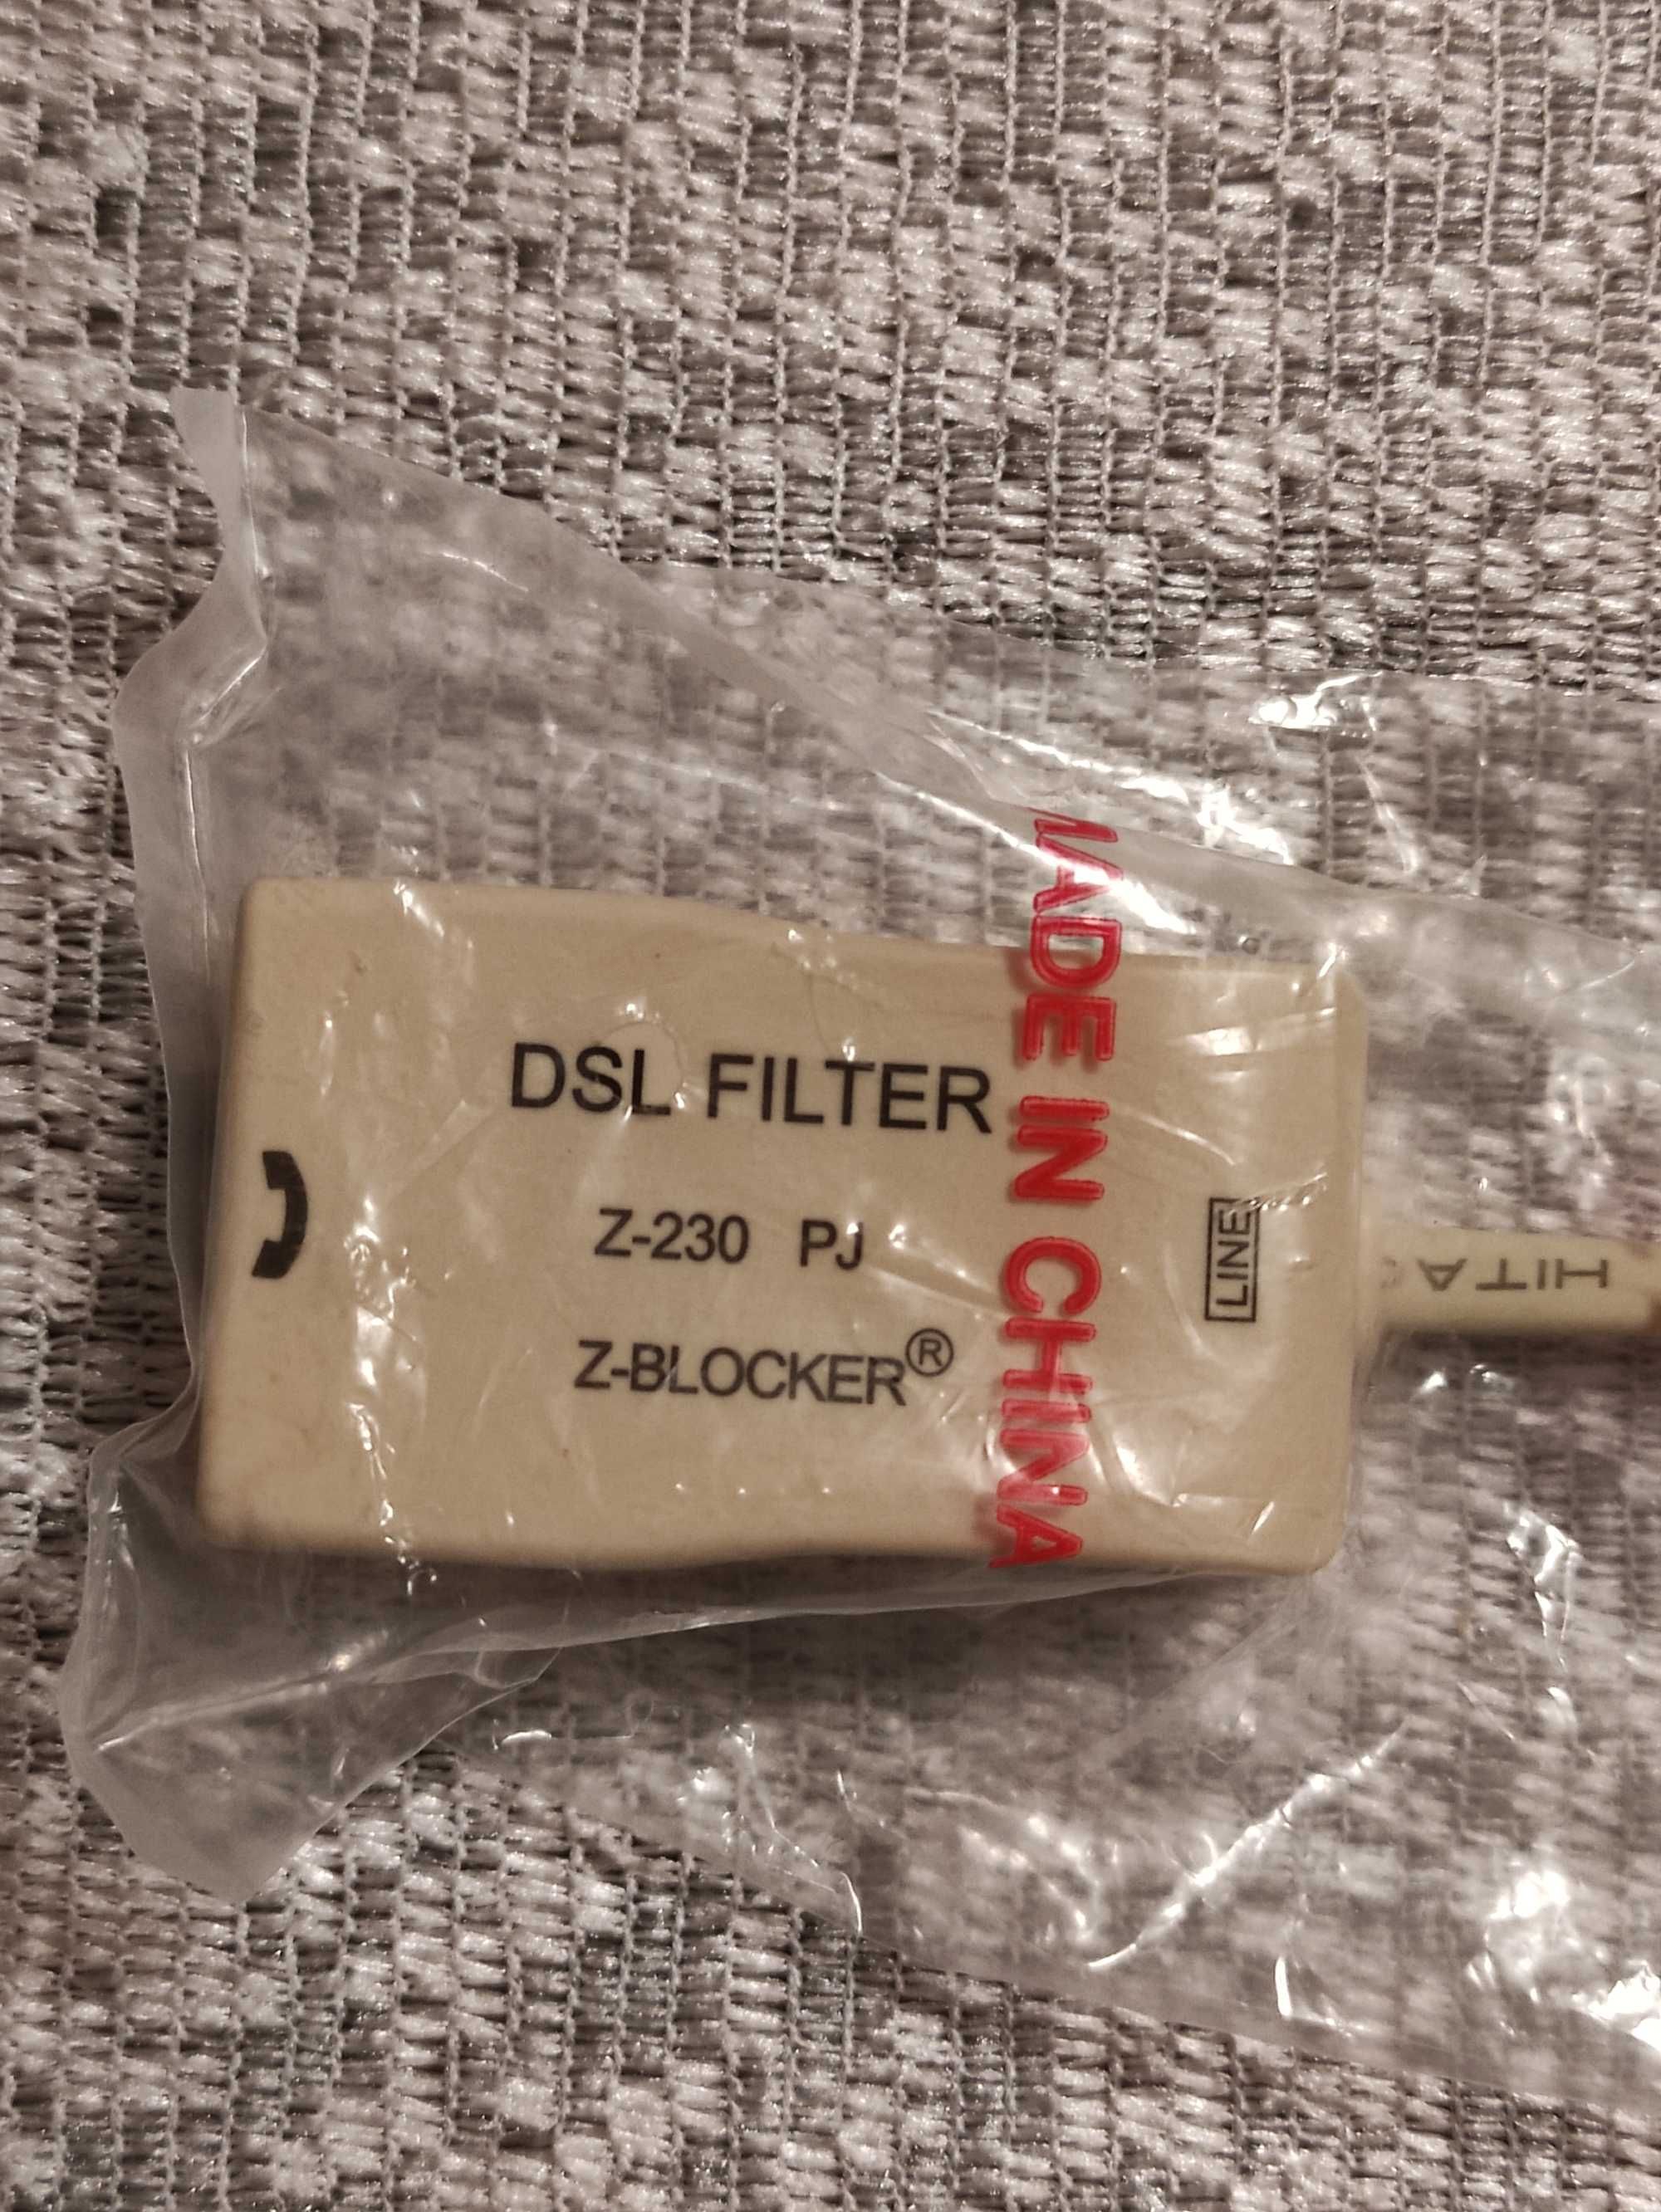 DSL filter Excelsus Z-230PJ Z-Blocker